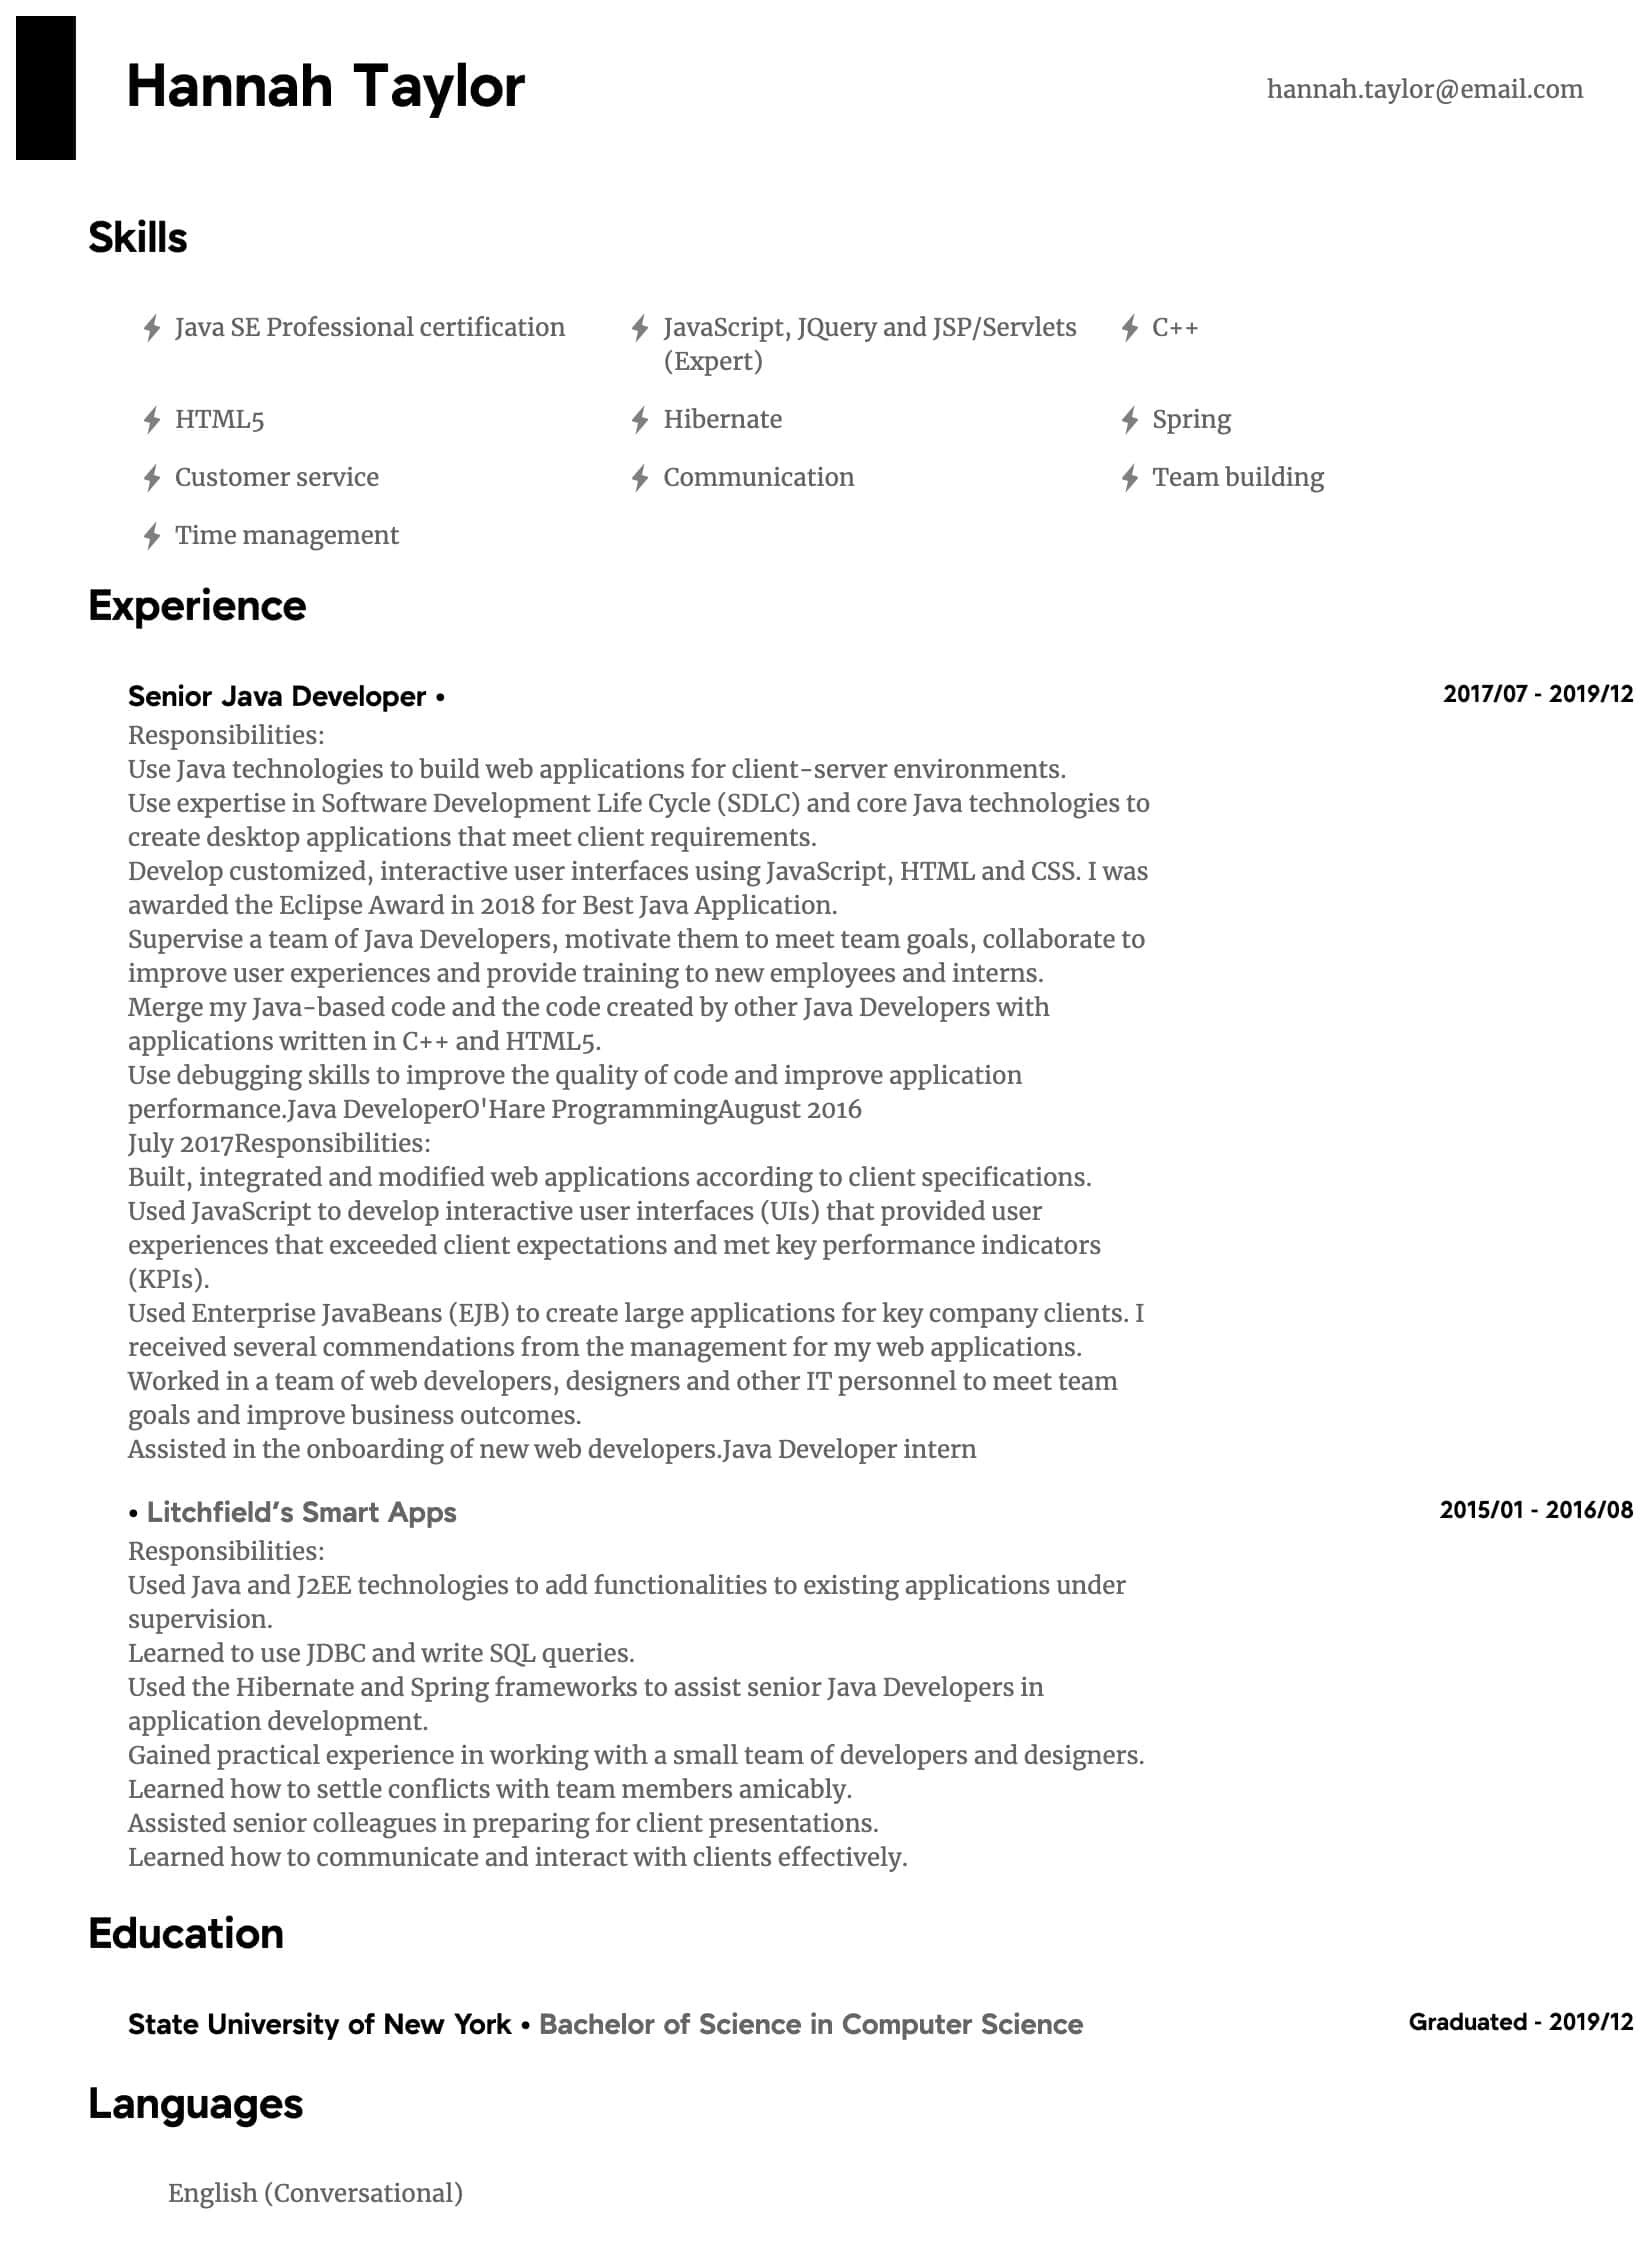 Sample Resume 5 Years Experience Java Java Developer Resume Samples All Experience Levels Resume.com …